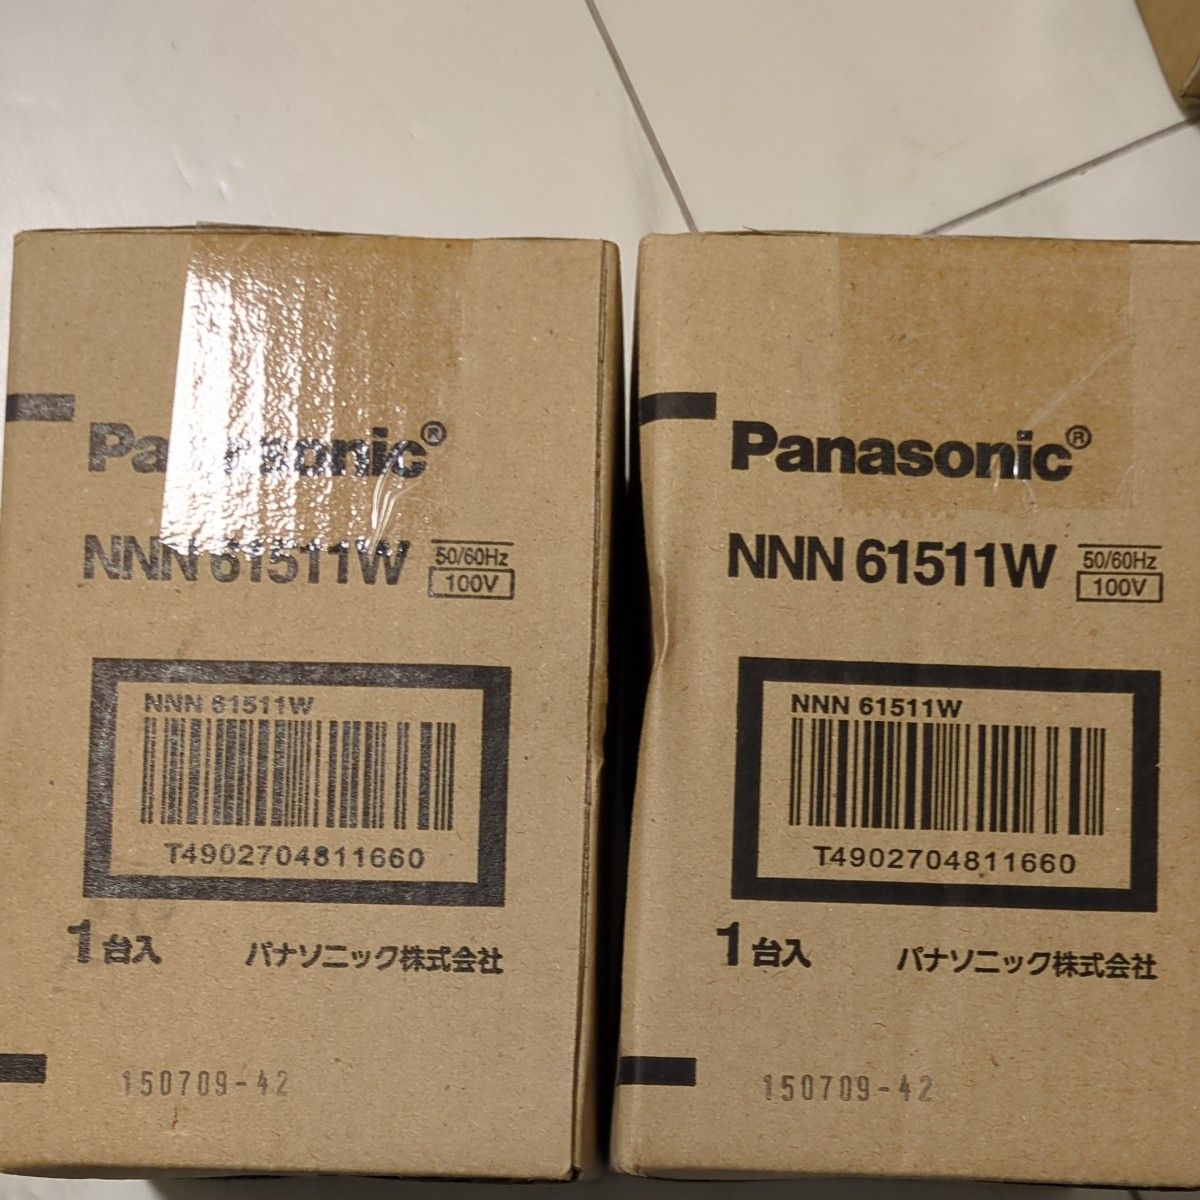 ダウンライト パナソニック Panasonic LED LEDダウンライト NNN61511W 埋込 100v